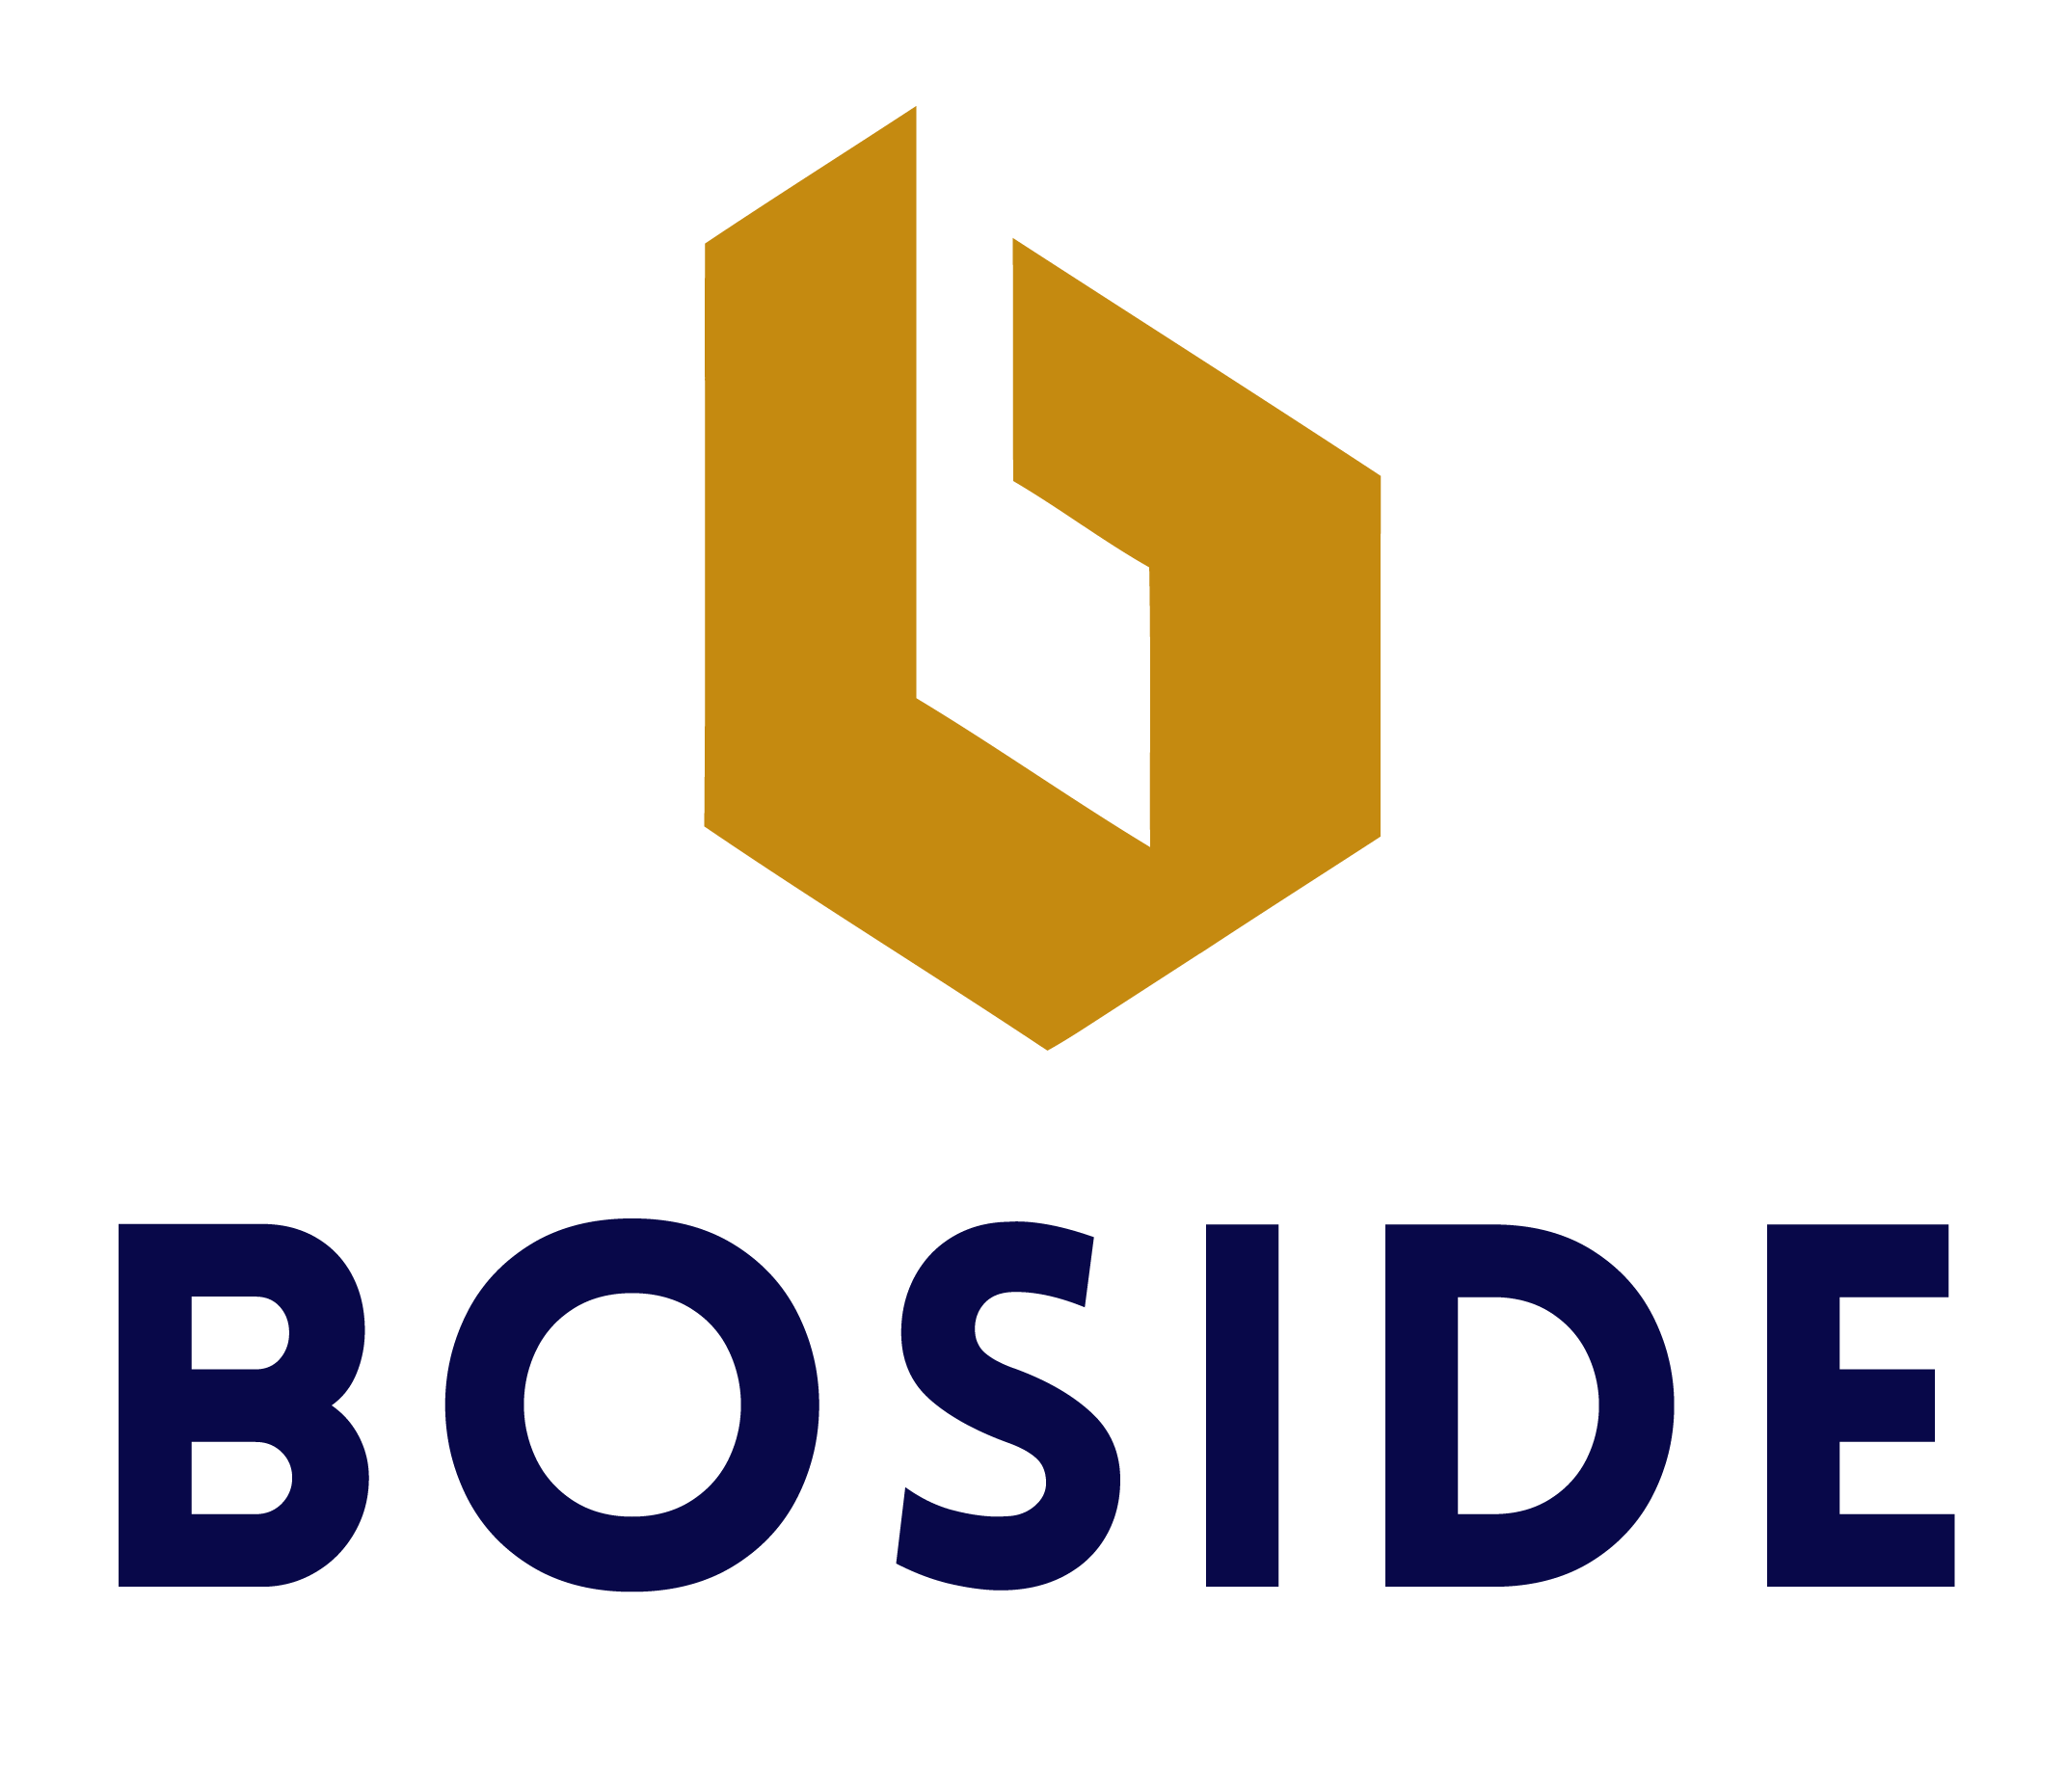 The BOSIDE